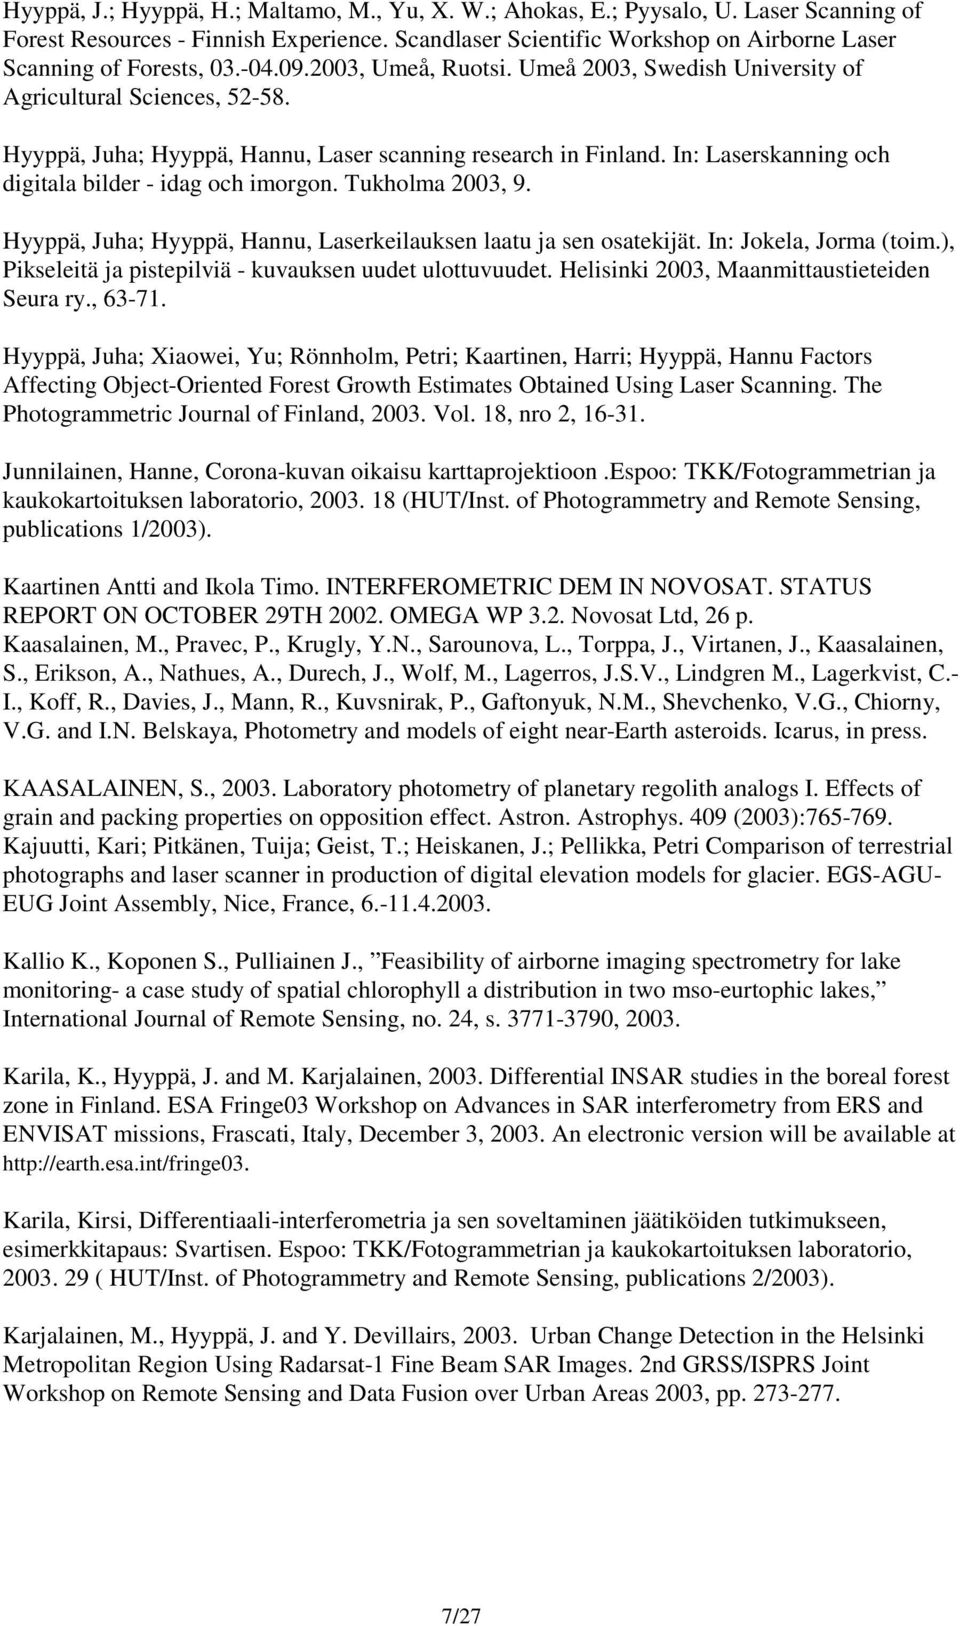 Hyyppä, Juha; Hyyppä, Hannu, Laser scanning research in Finland. In: Laserskanning och digitala bilder - idag och imorgon. Tukholma 2003, 9.